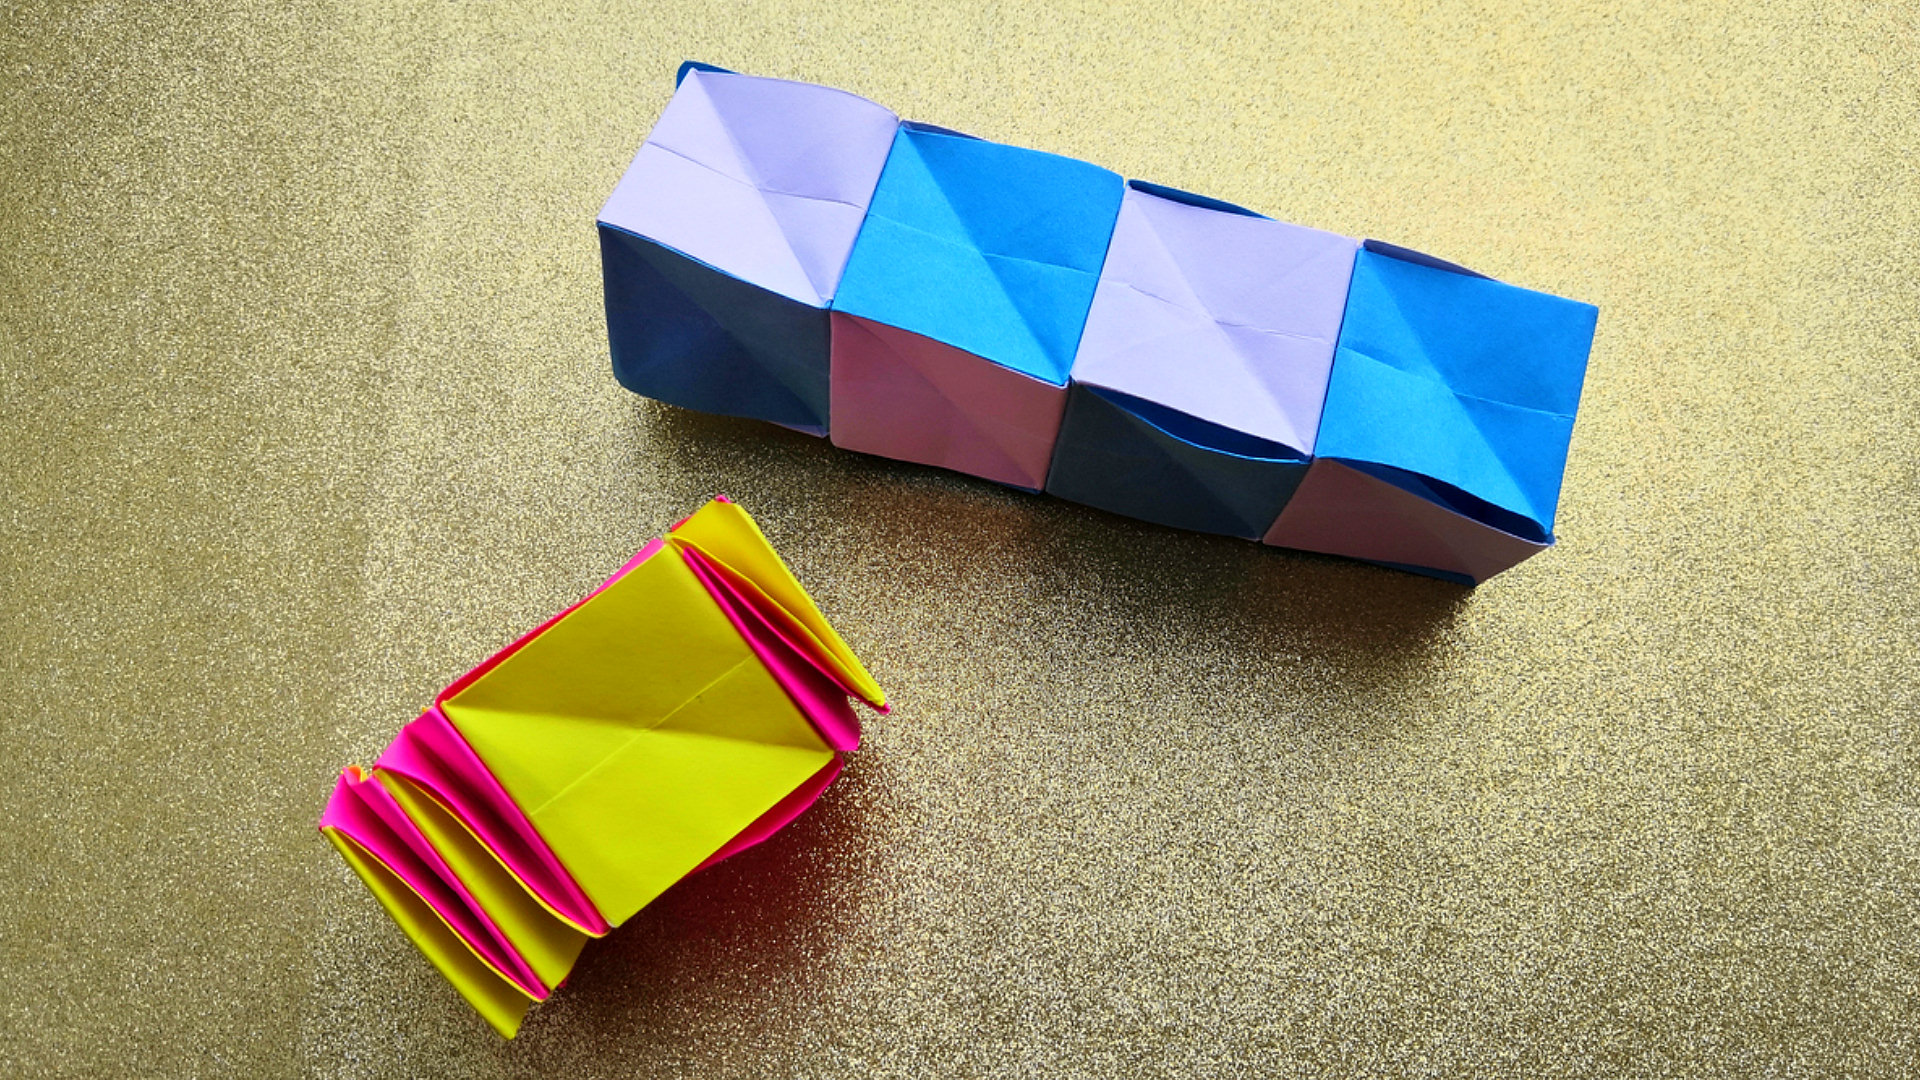 Антистресс из бумаги а4. Игрушка антистресс из бумаги оригами. Бумажная игрушка антистресс трансформер. Оригами антистресс трансформер. Антистресс из бумаги своими руками.